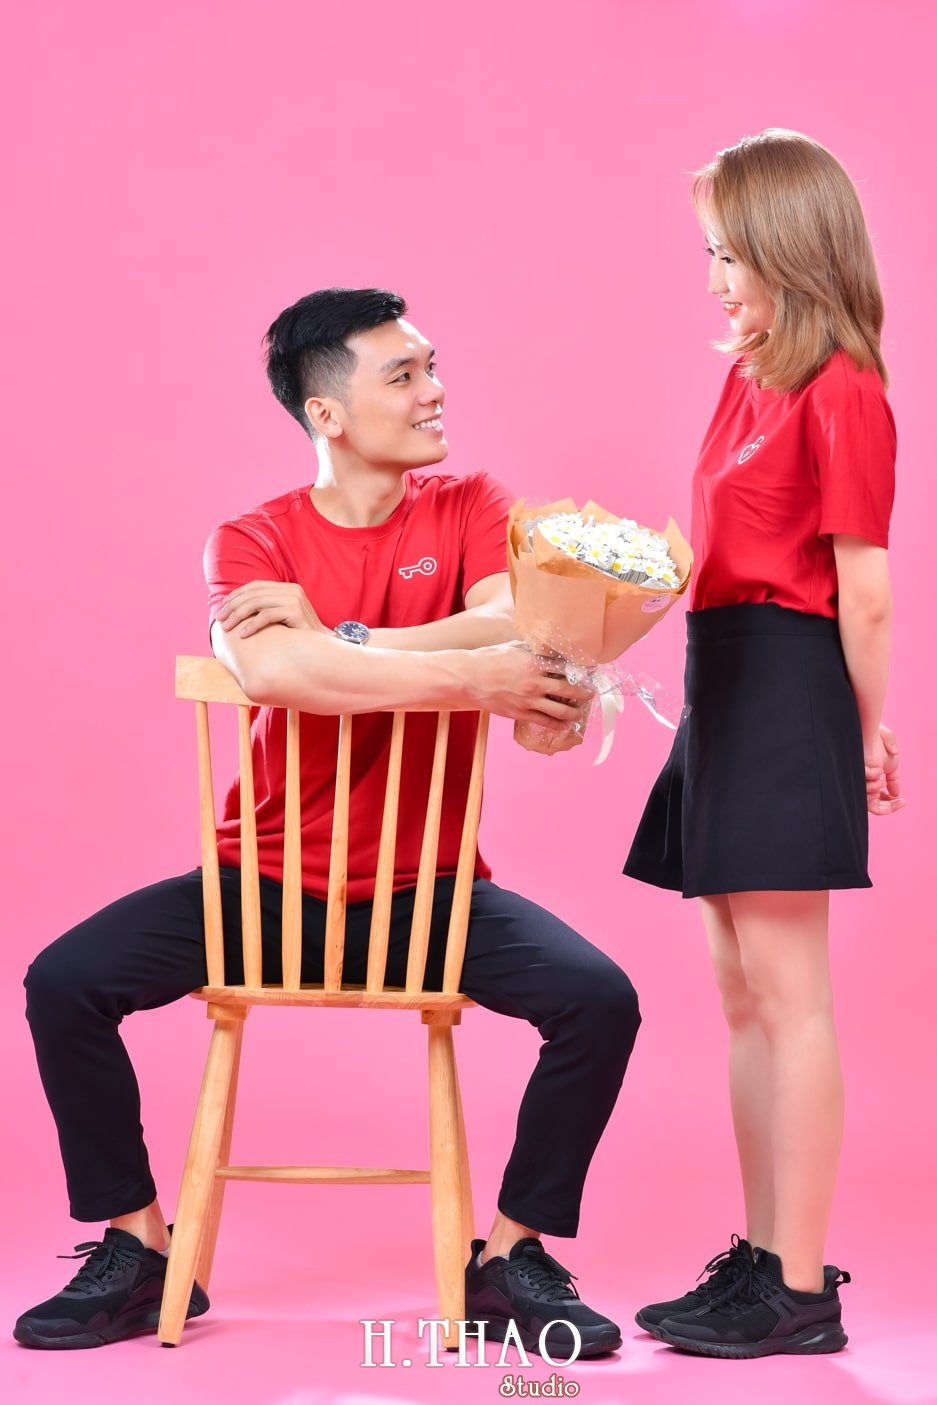 Anh couple 7 min - 3 concept chụp ảnh với người yêu đẹp mà chất - HThao Studio